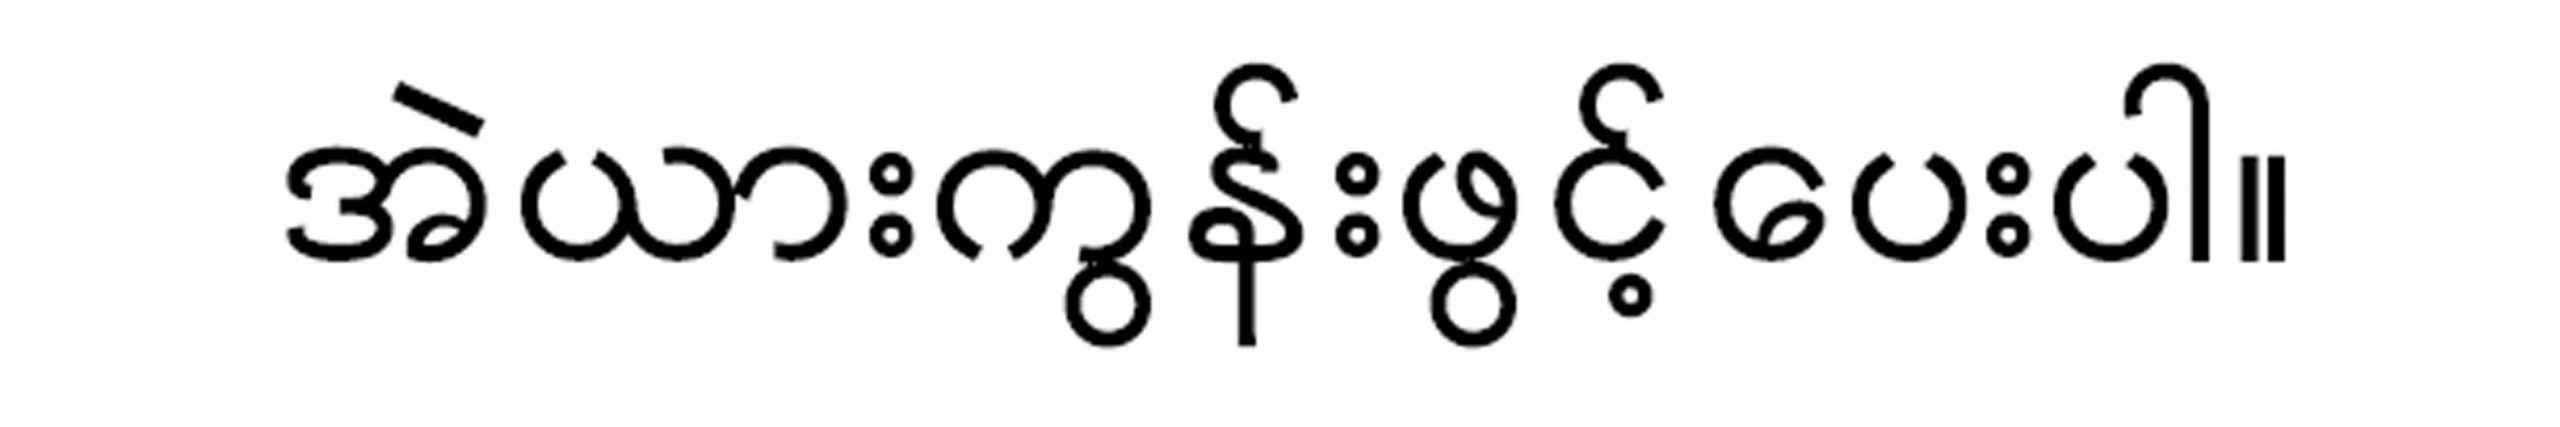 タクシーで使える簡単なミャンマー語の画像